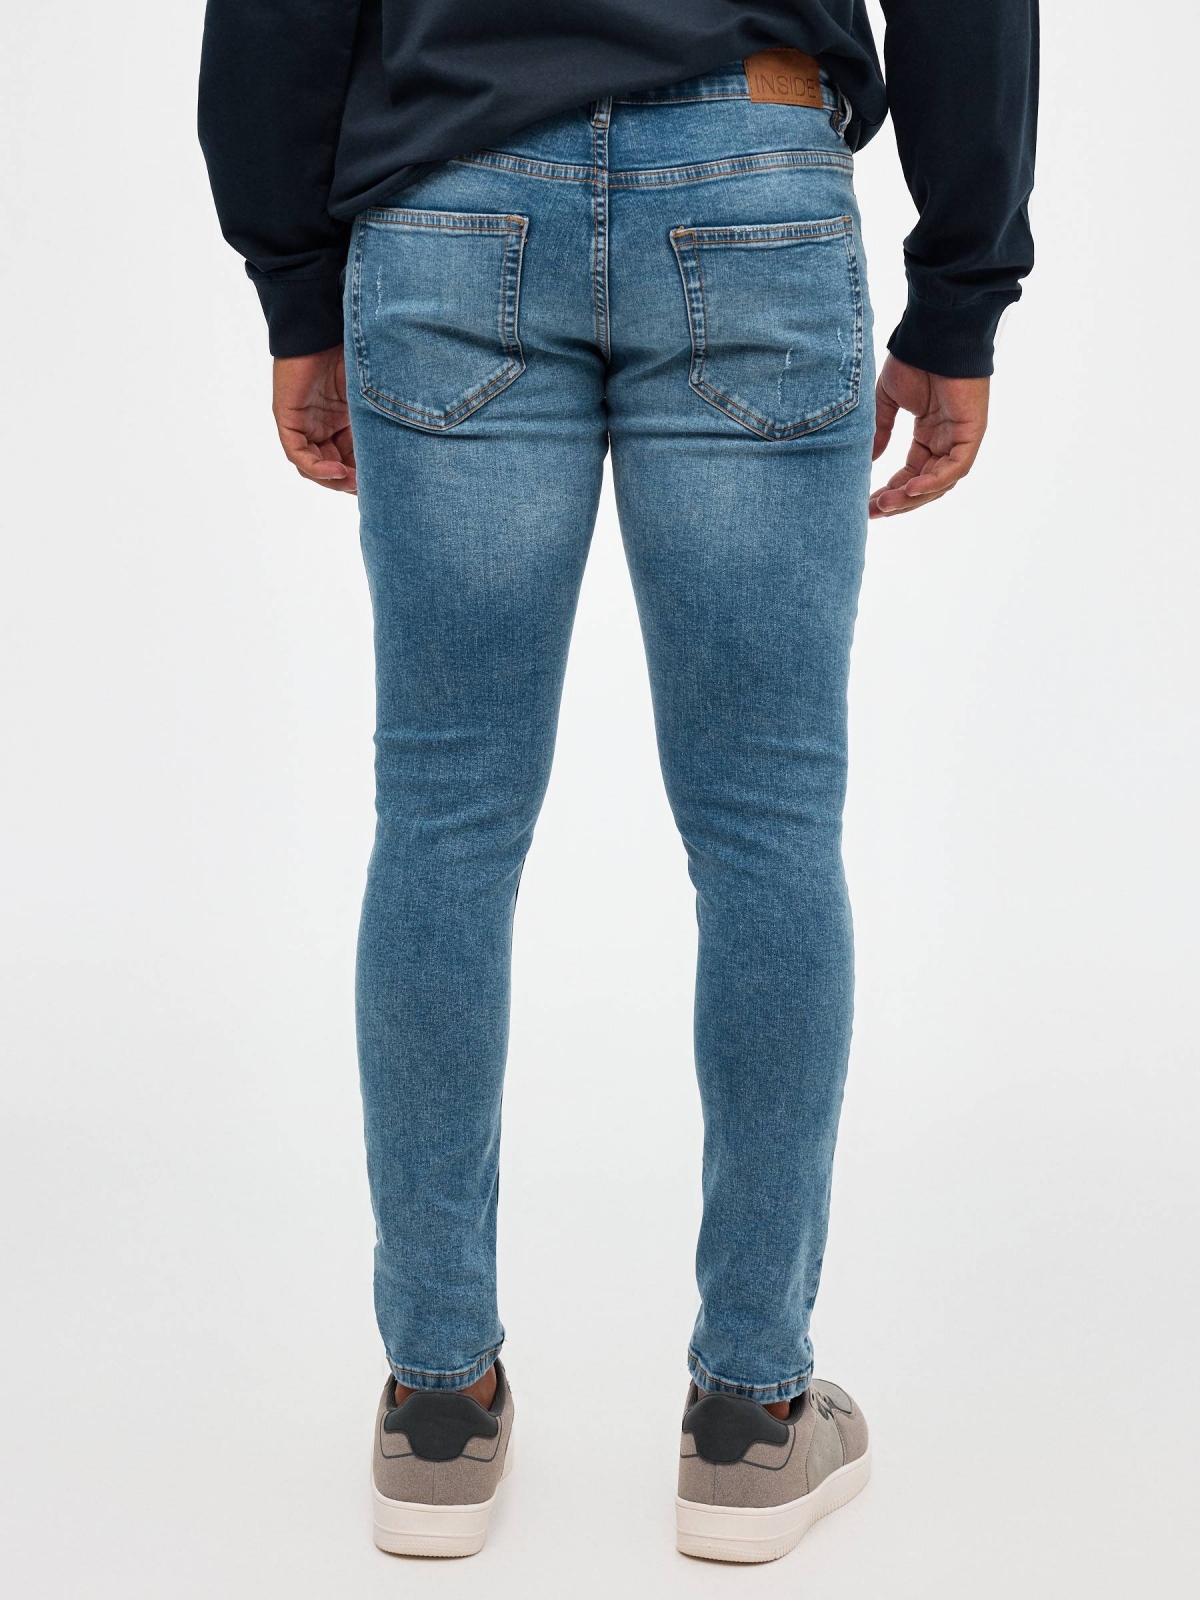 Jeans skinny partes inferiores rasgadas azul vista meia traseira